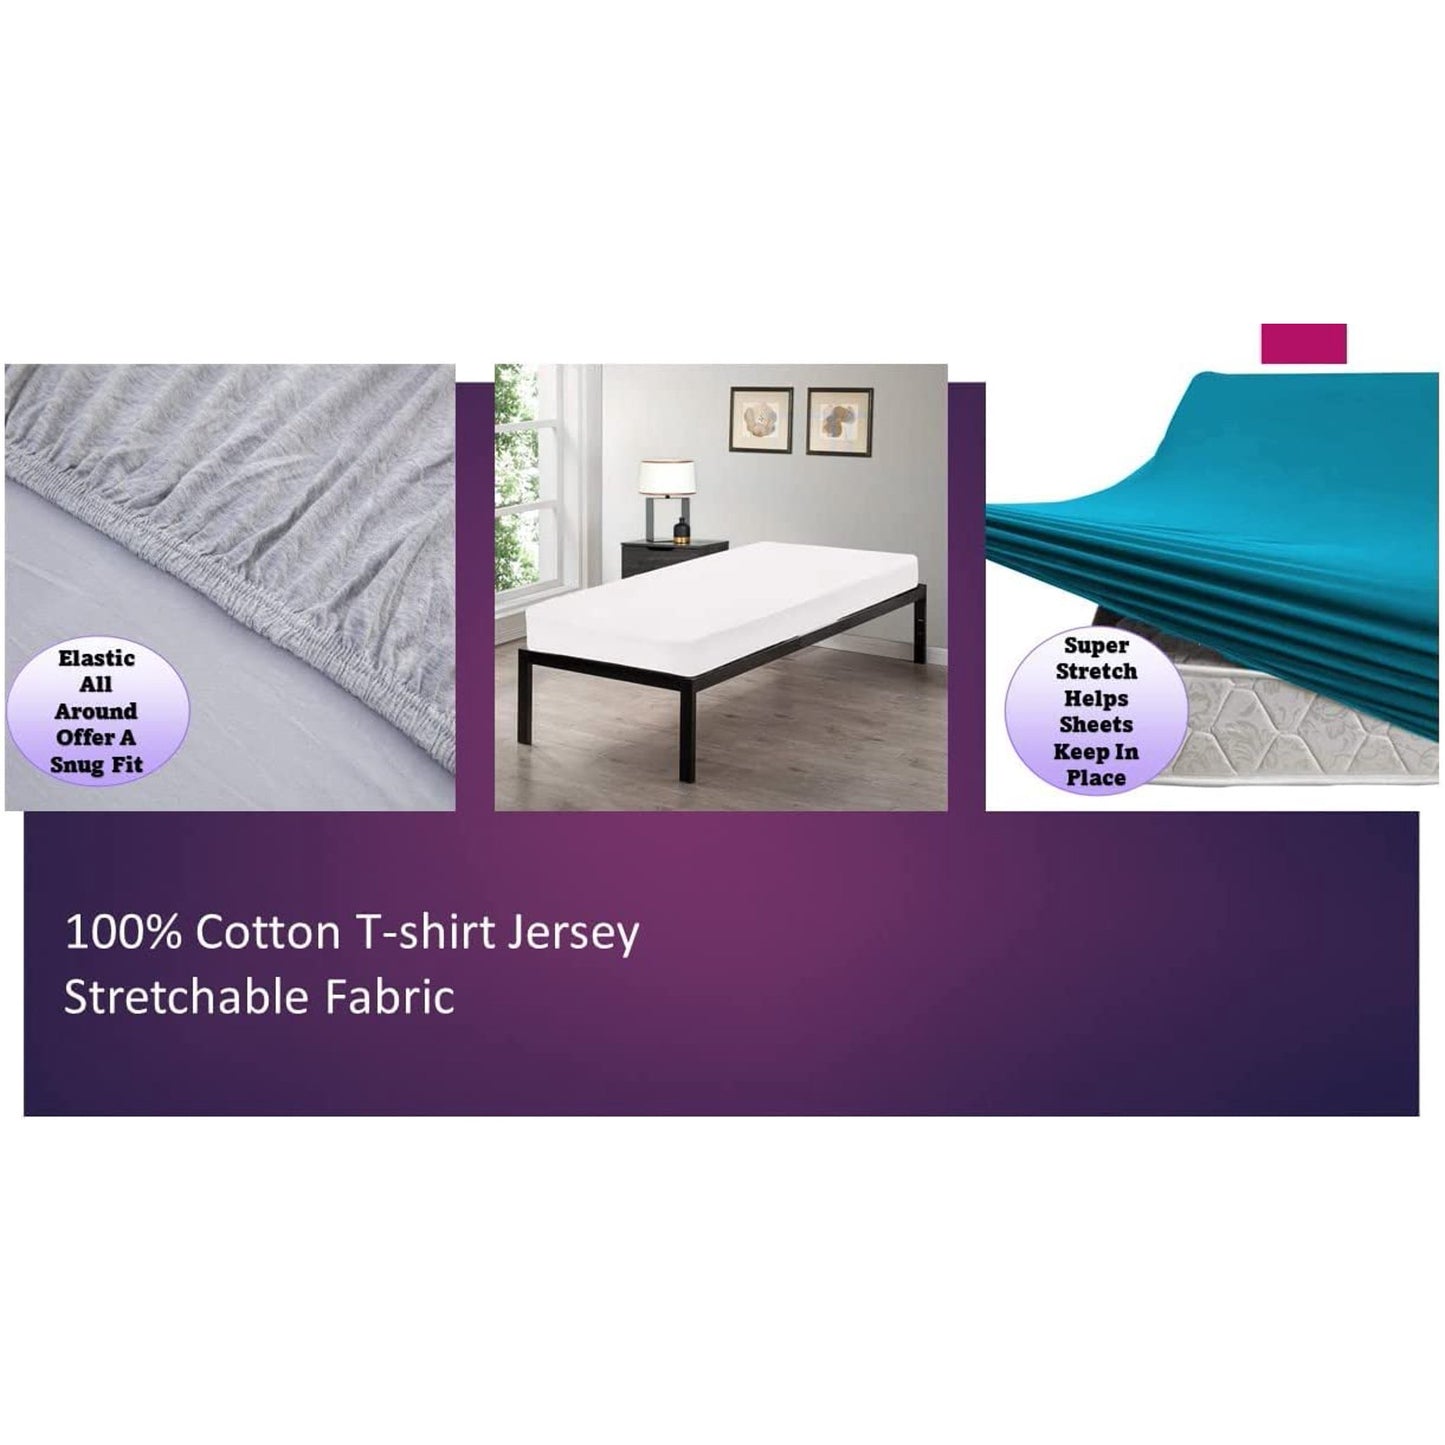 100% Combed T-Shirt Cotton Jersey Knit Camp Sheet Set, 1 Fitted cot Sheet, 1 Flat Sheet, 1 Standard Pillow case Black